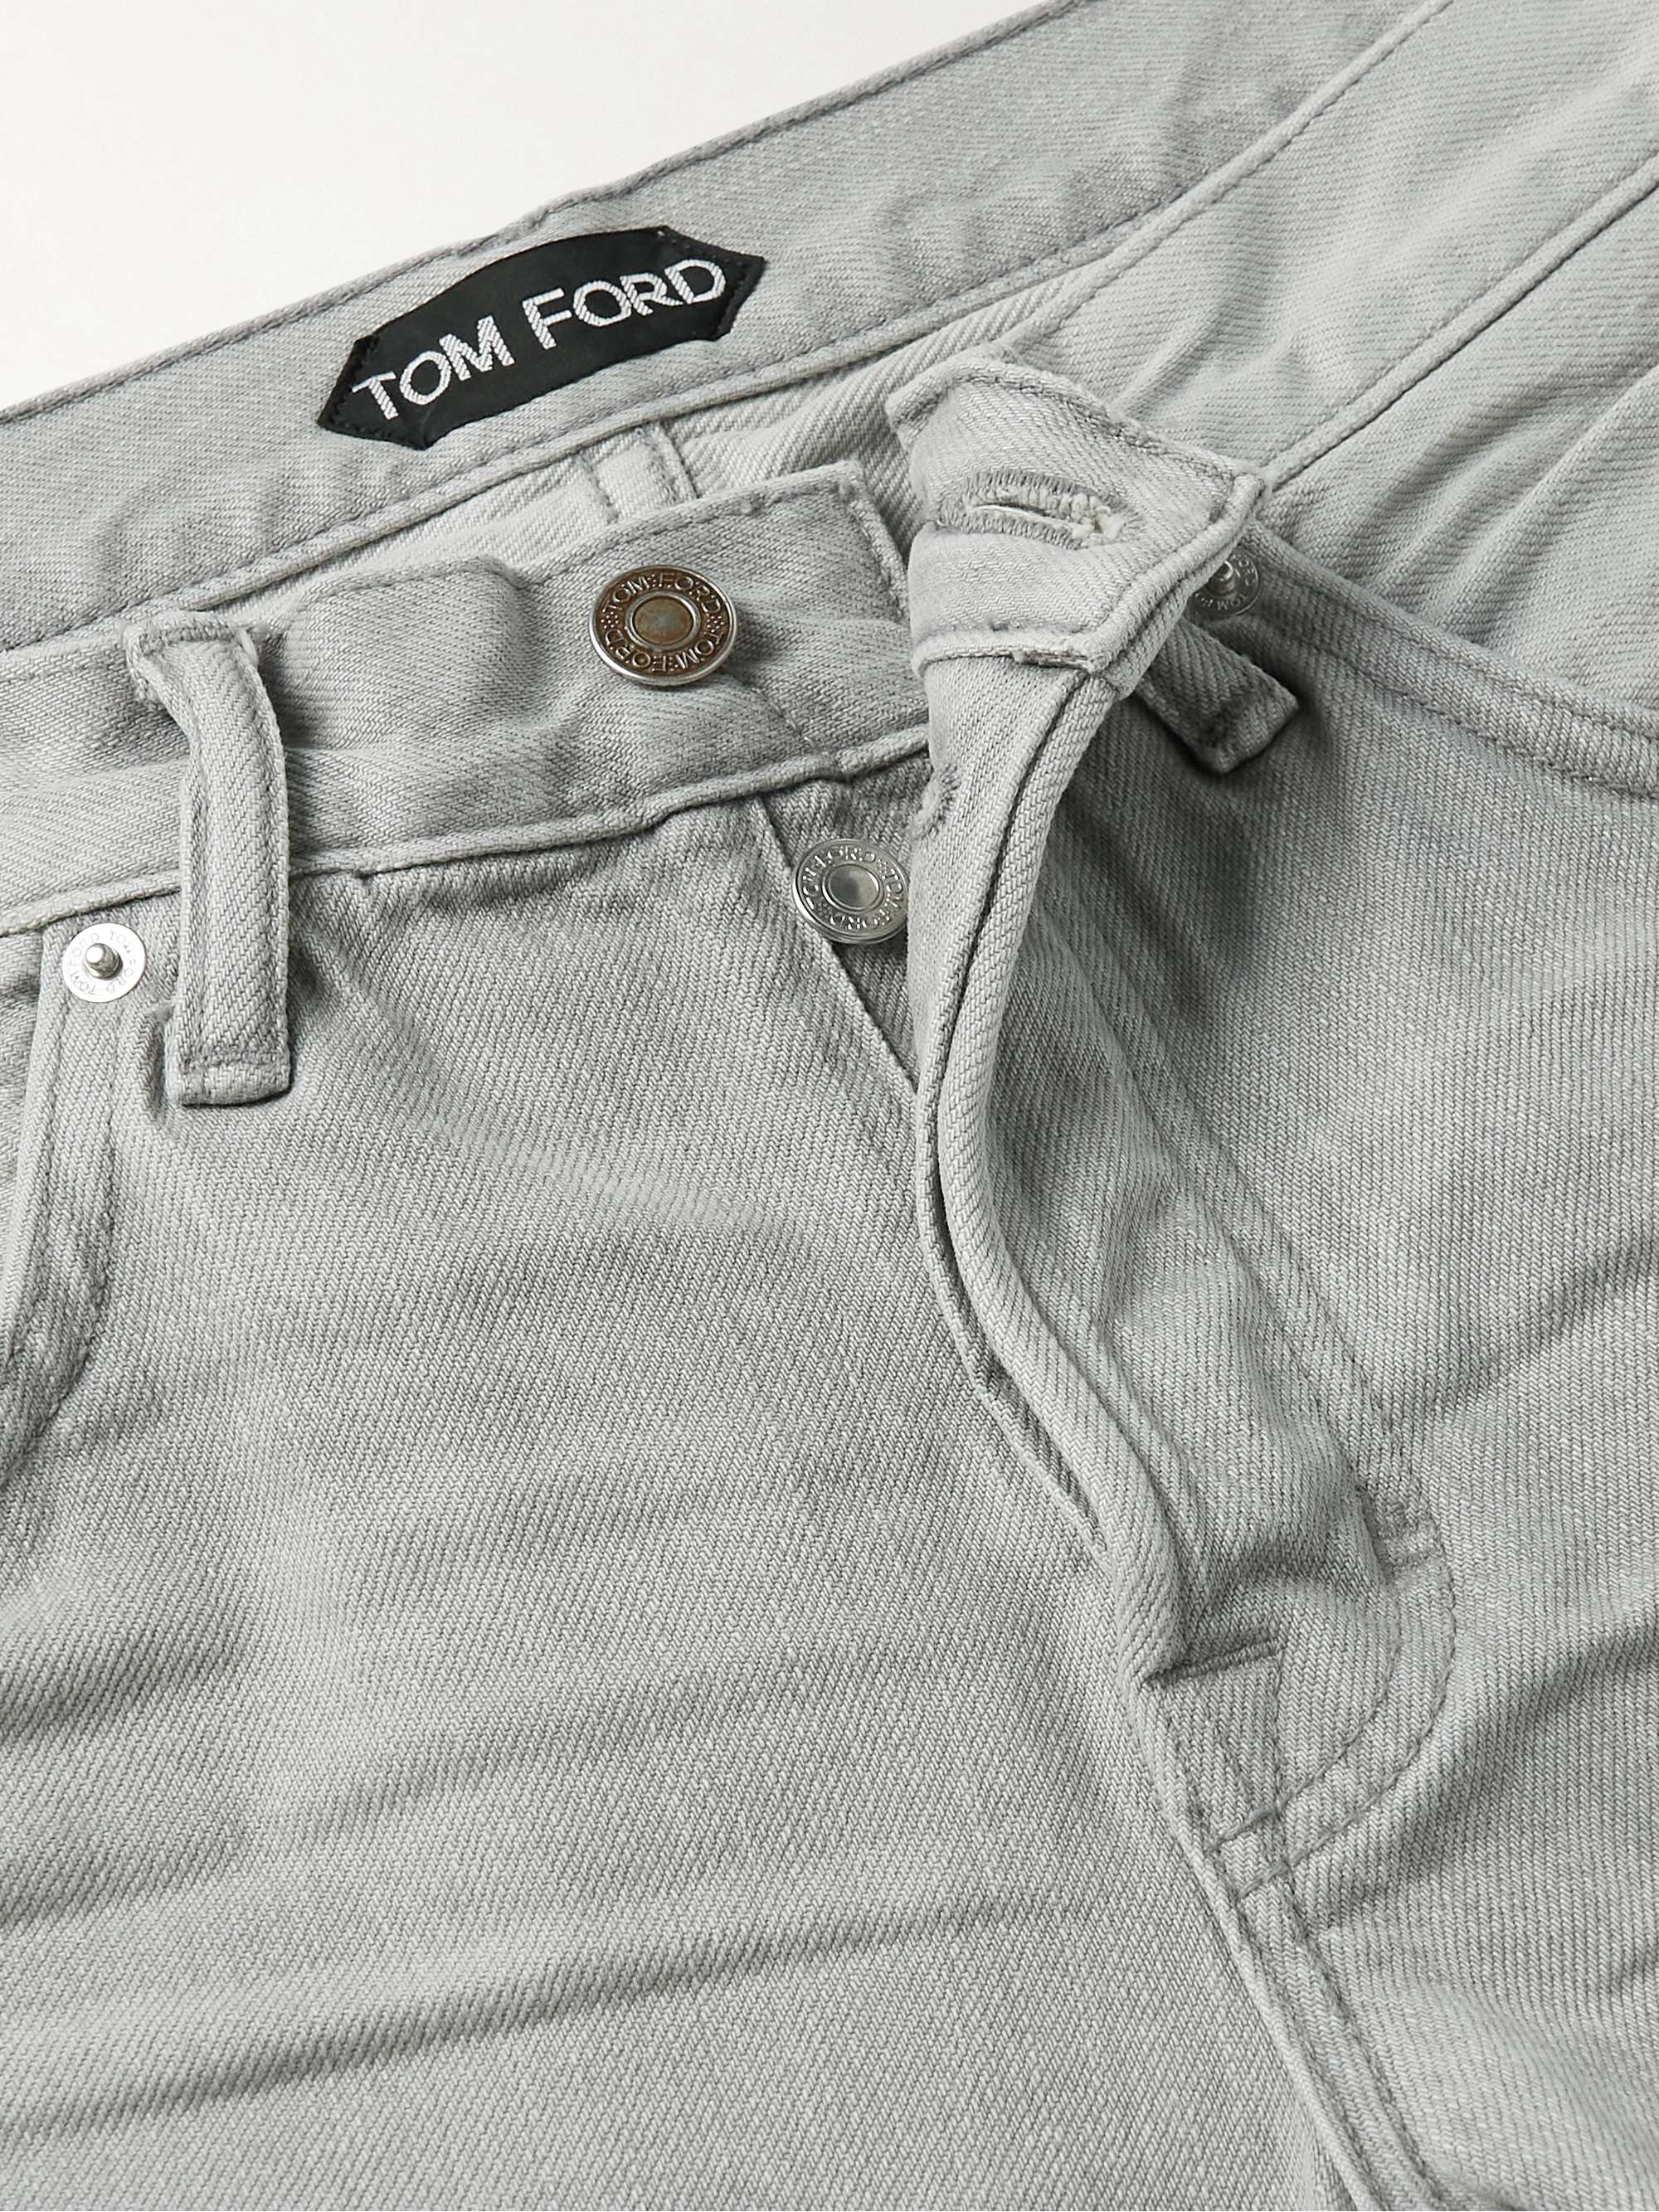 TOM FORD Slim-Fit Selvedge Jeans | MR PORTER